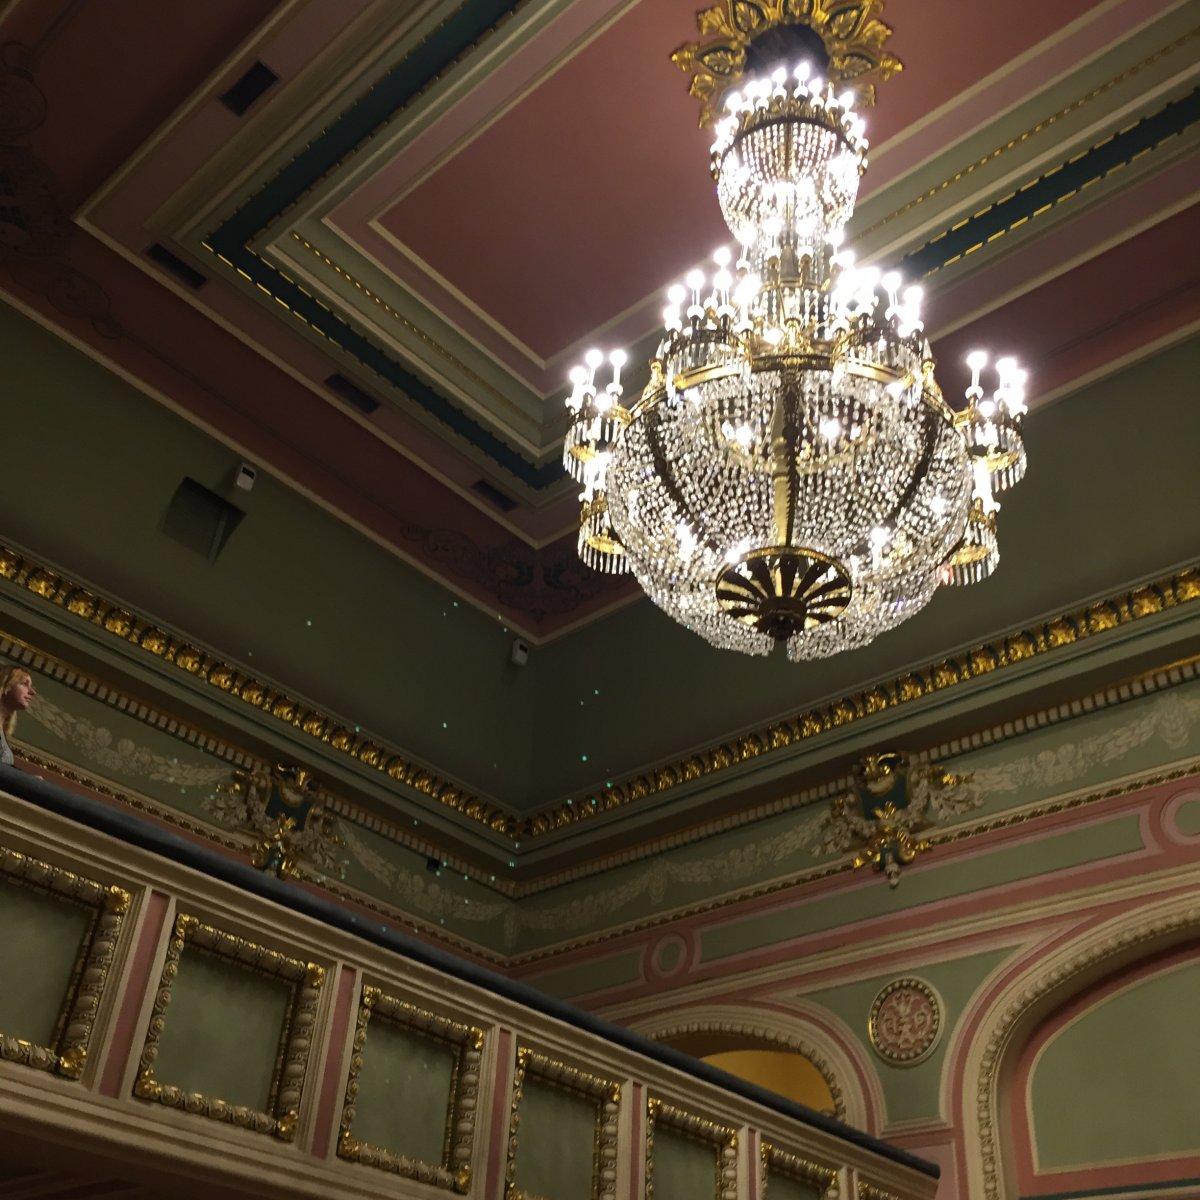 Театр комиссаржевской большой зал